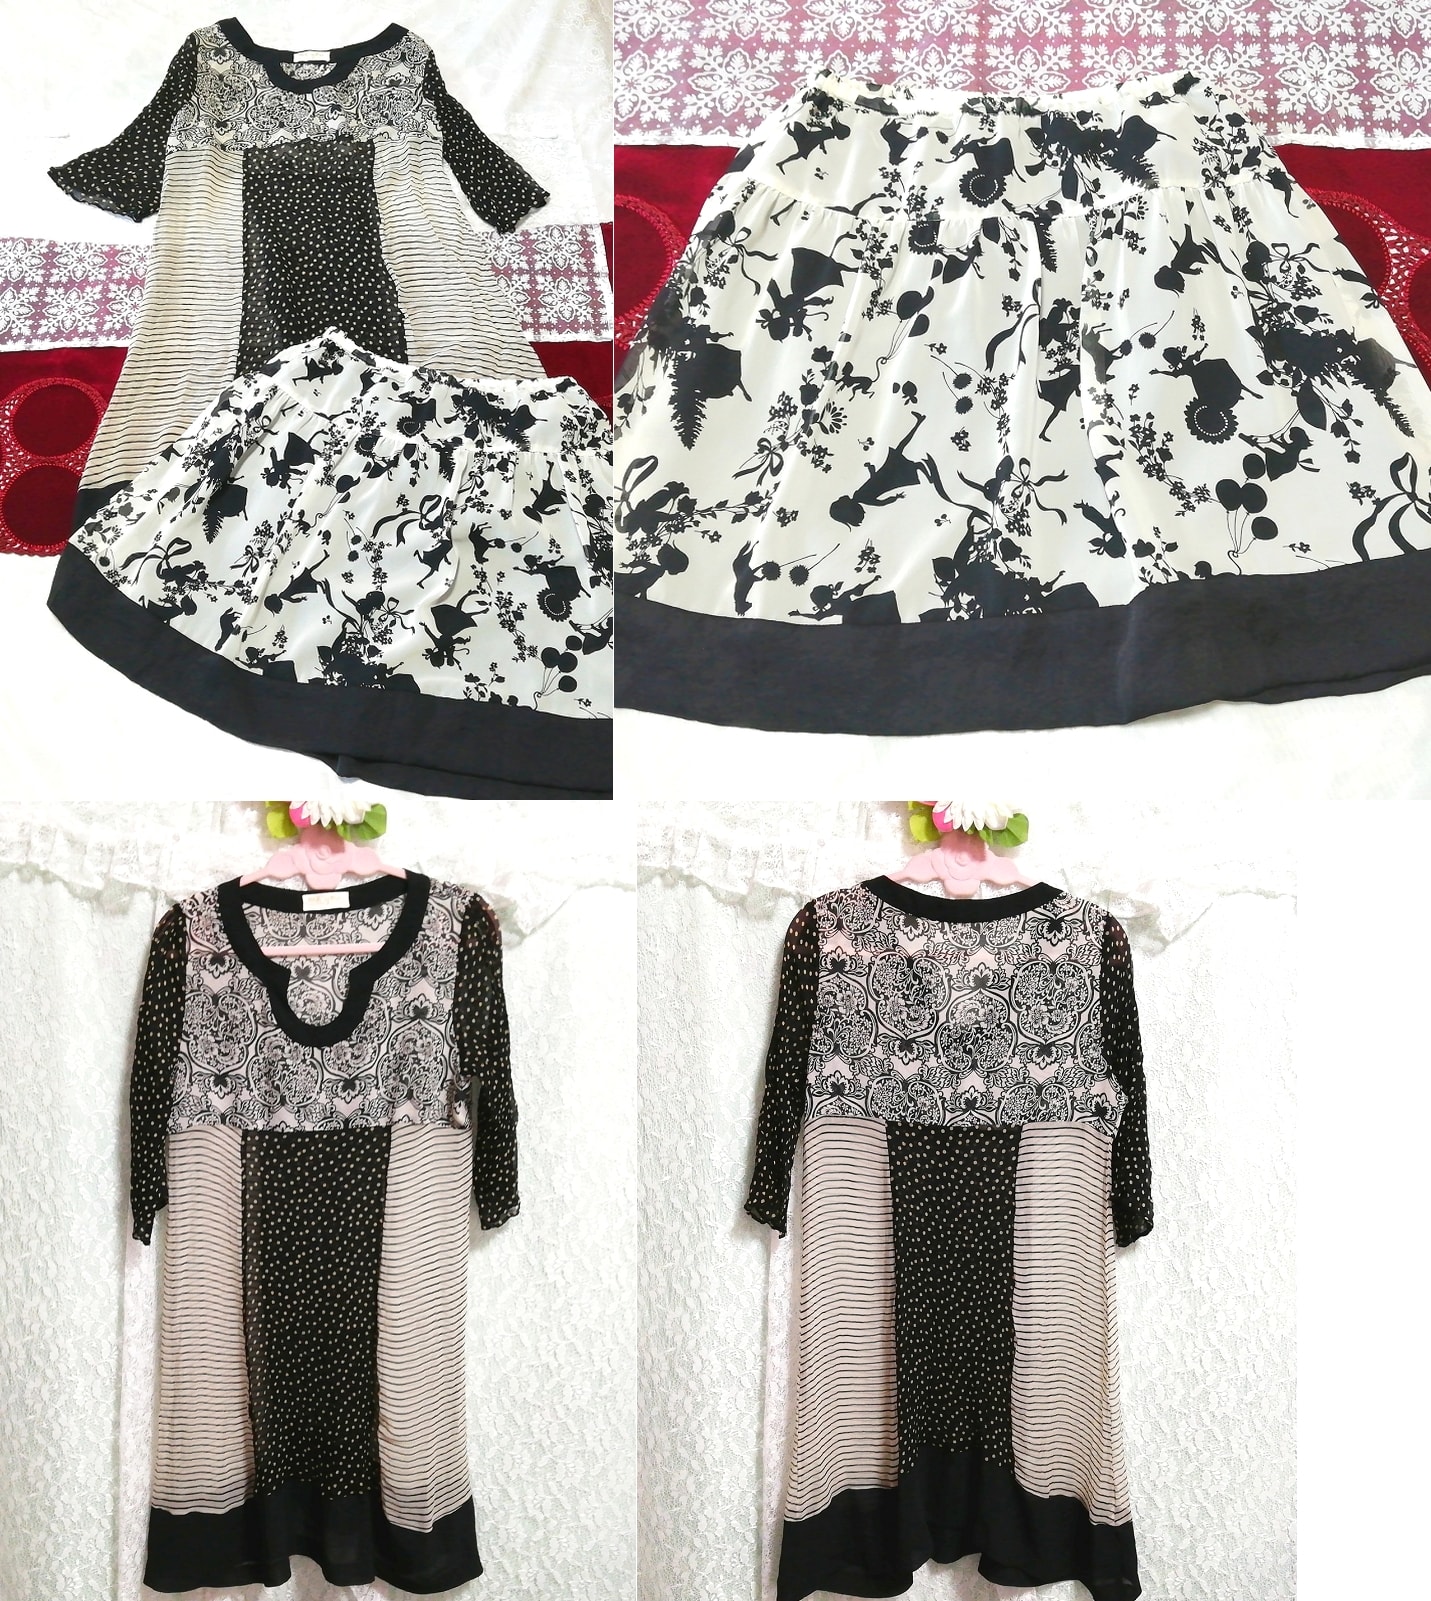 黑白雪纺透明束腰睡衣镂空廓形迷你裙 2P, 时尚, 女士时装, 睡衣